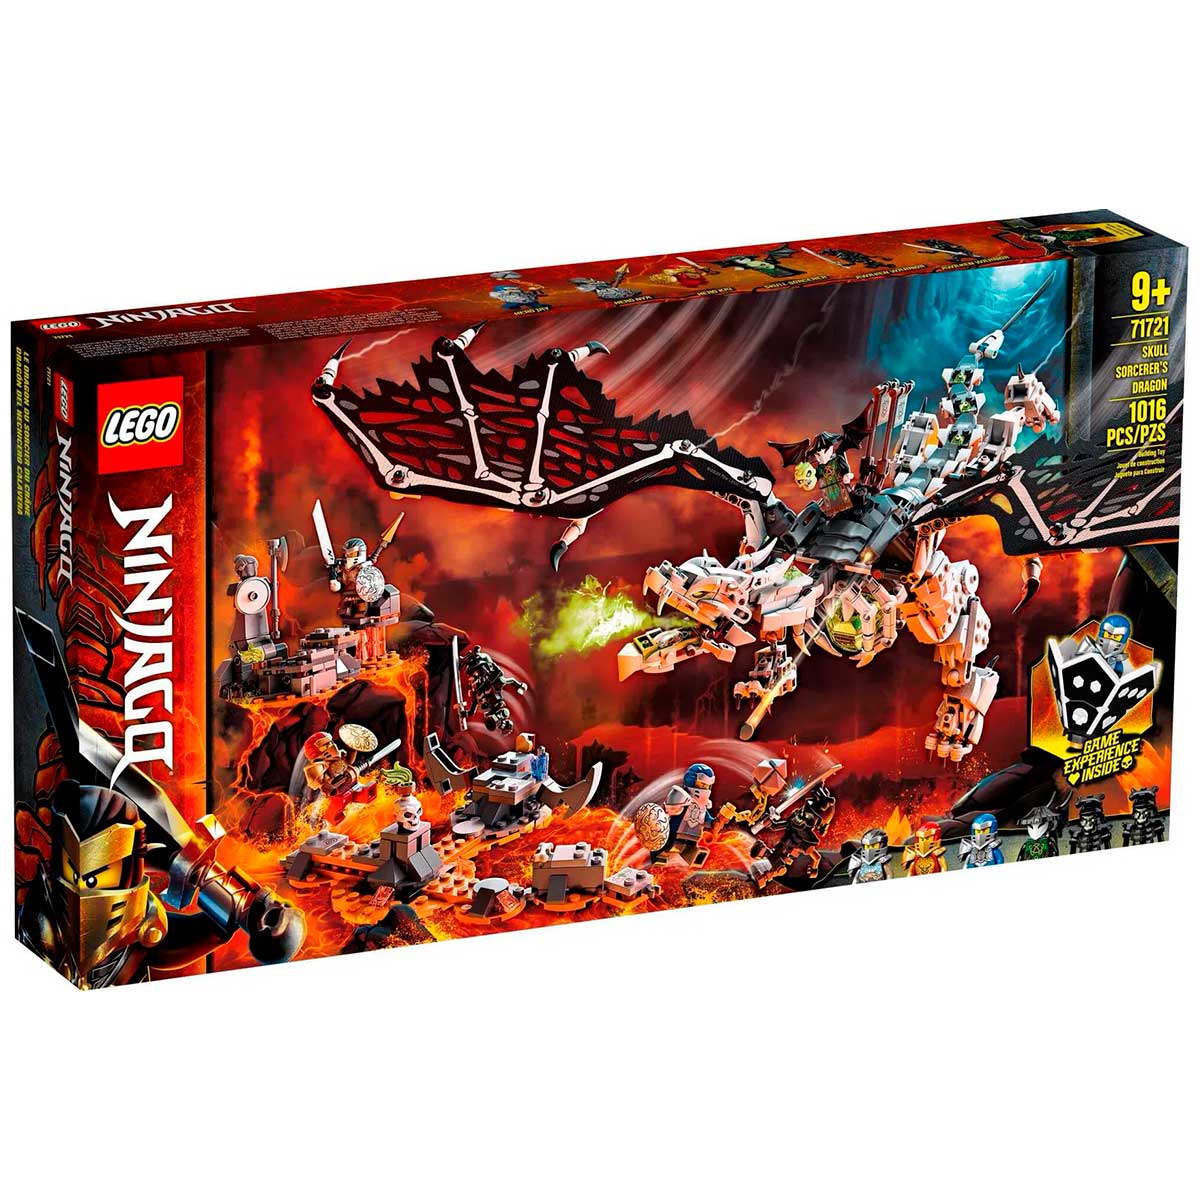 LEGO Ninjago - Dragão do Feiticeiro Caveira - 71721